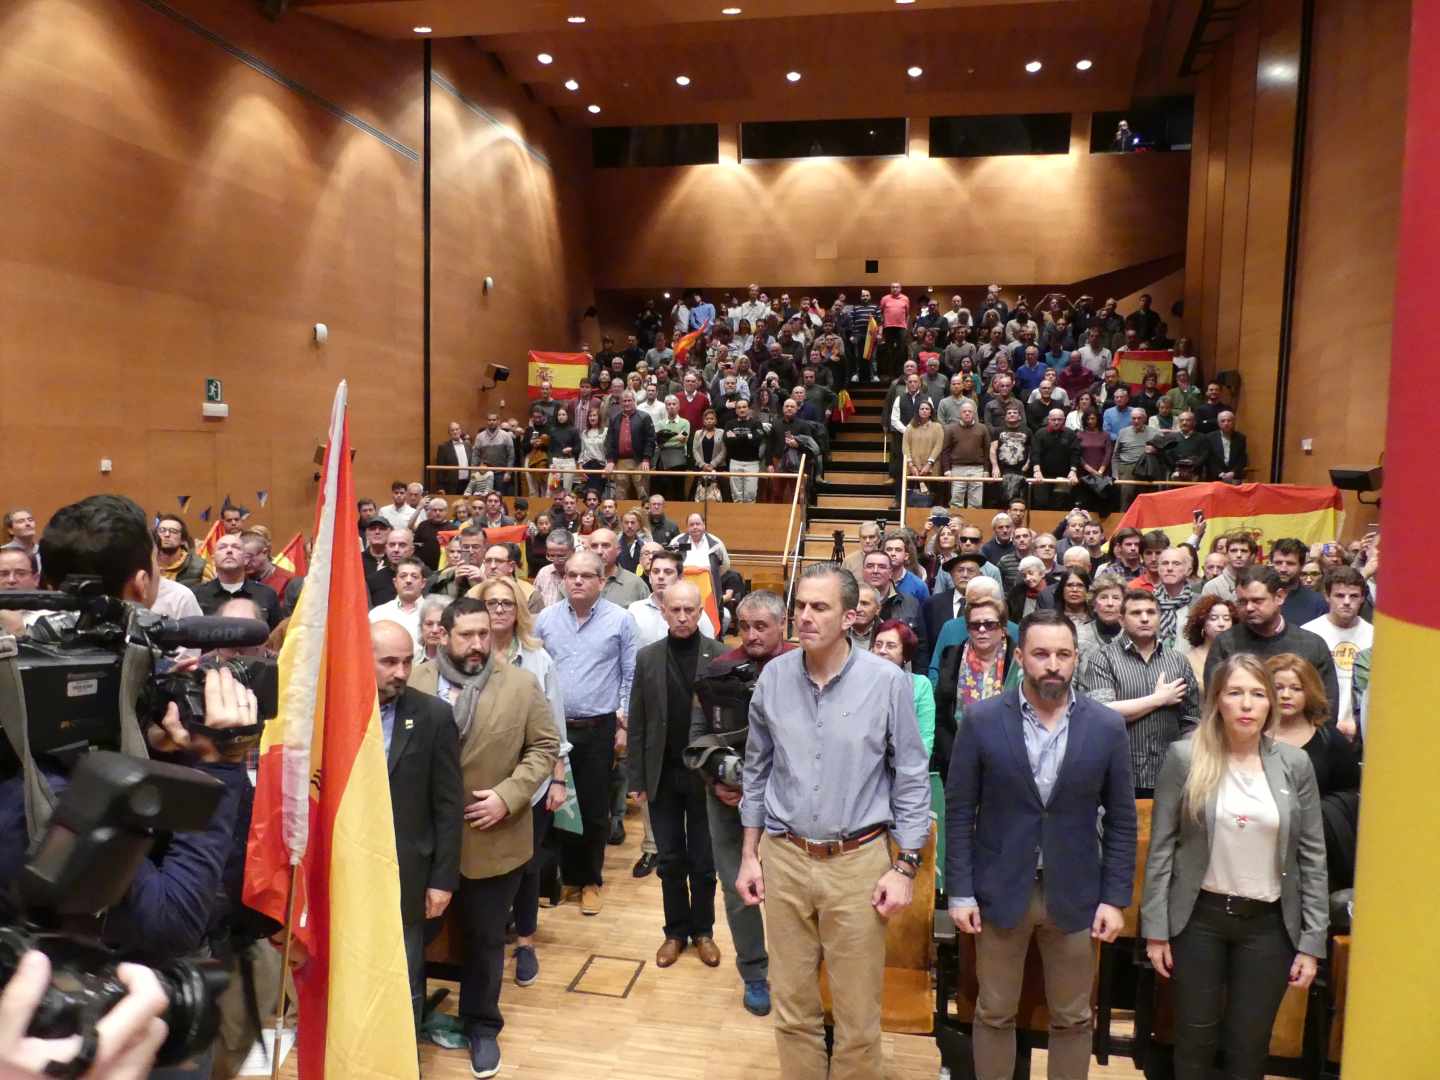 Momento en el que ha sonado el himno de España en la sala donde se ha celebrado el acto en Bilbao.